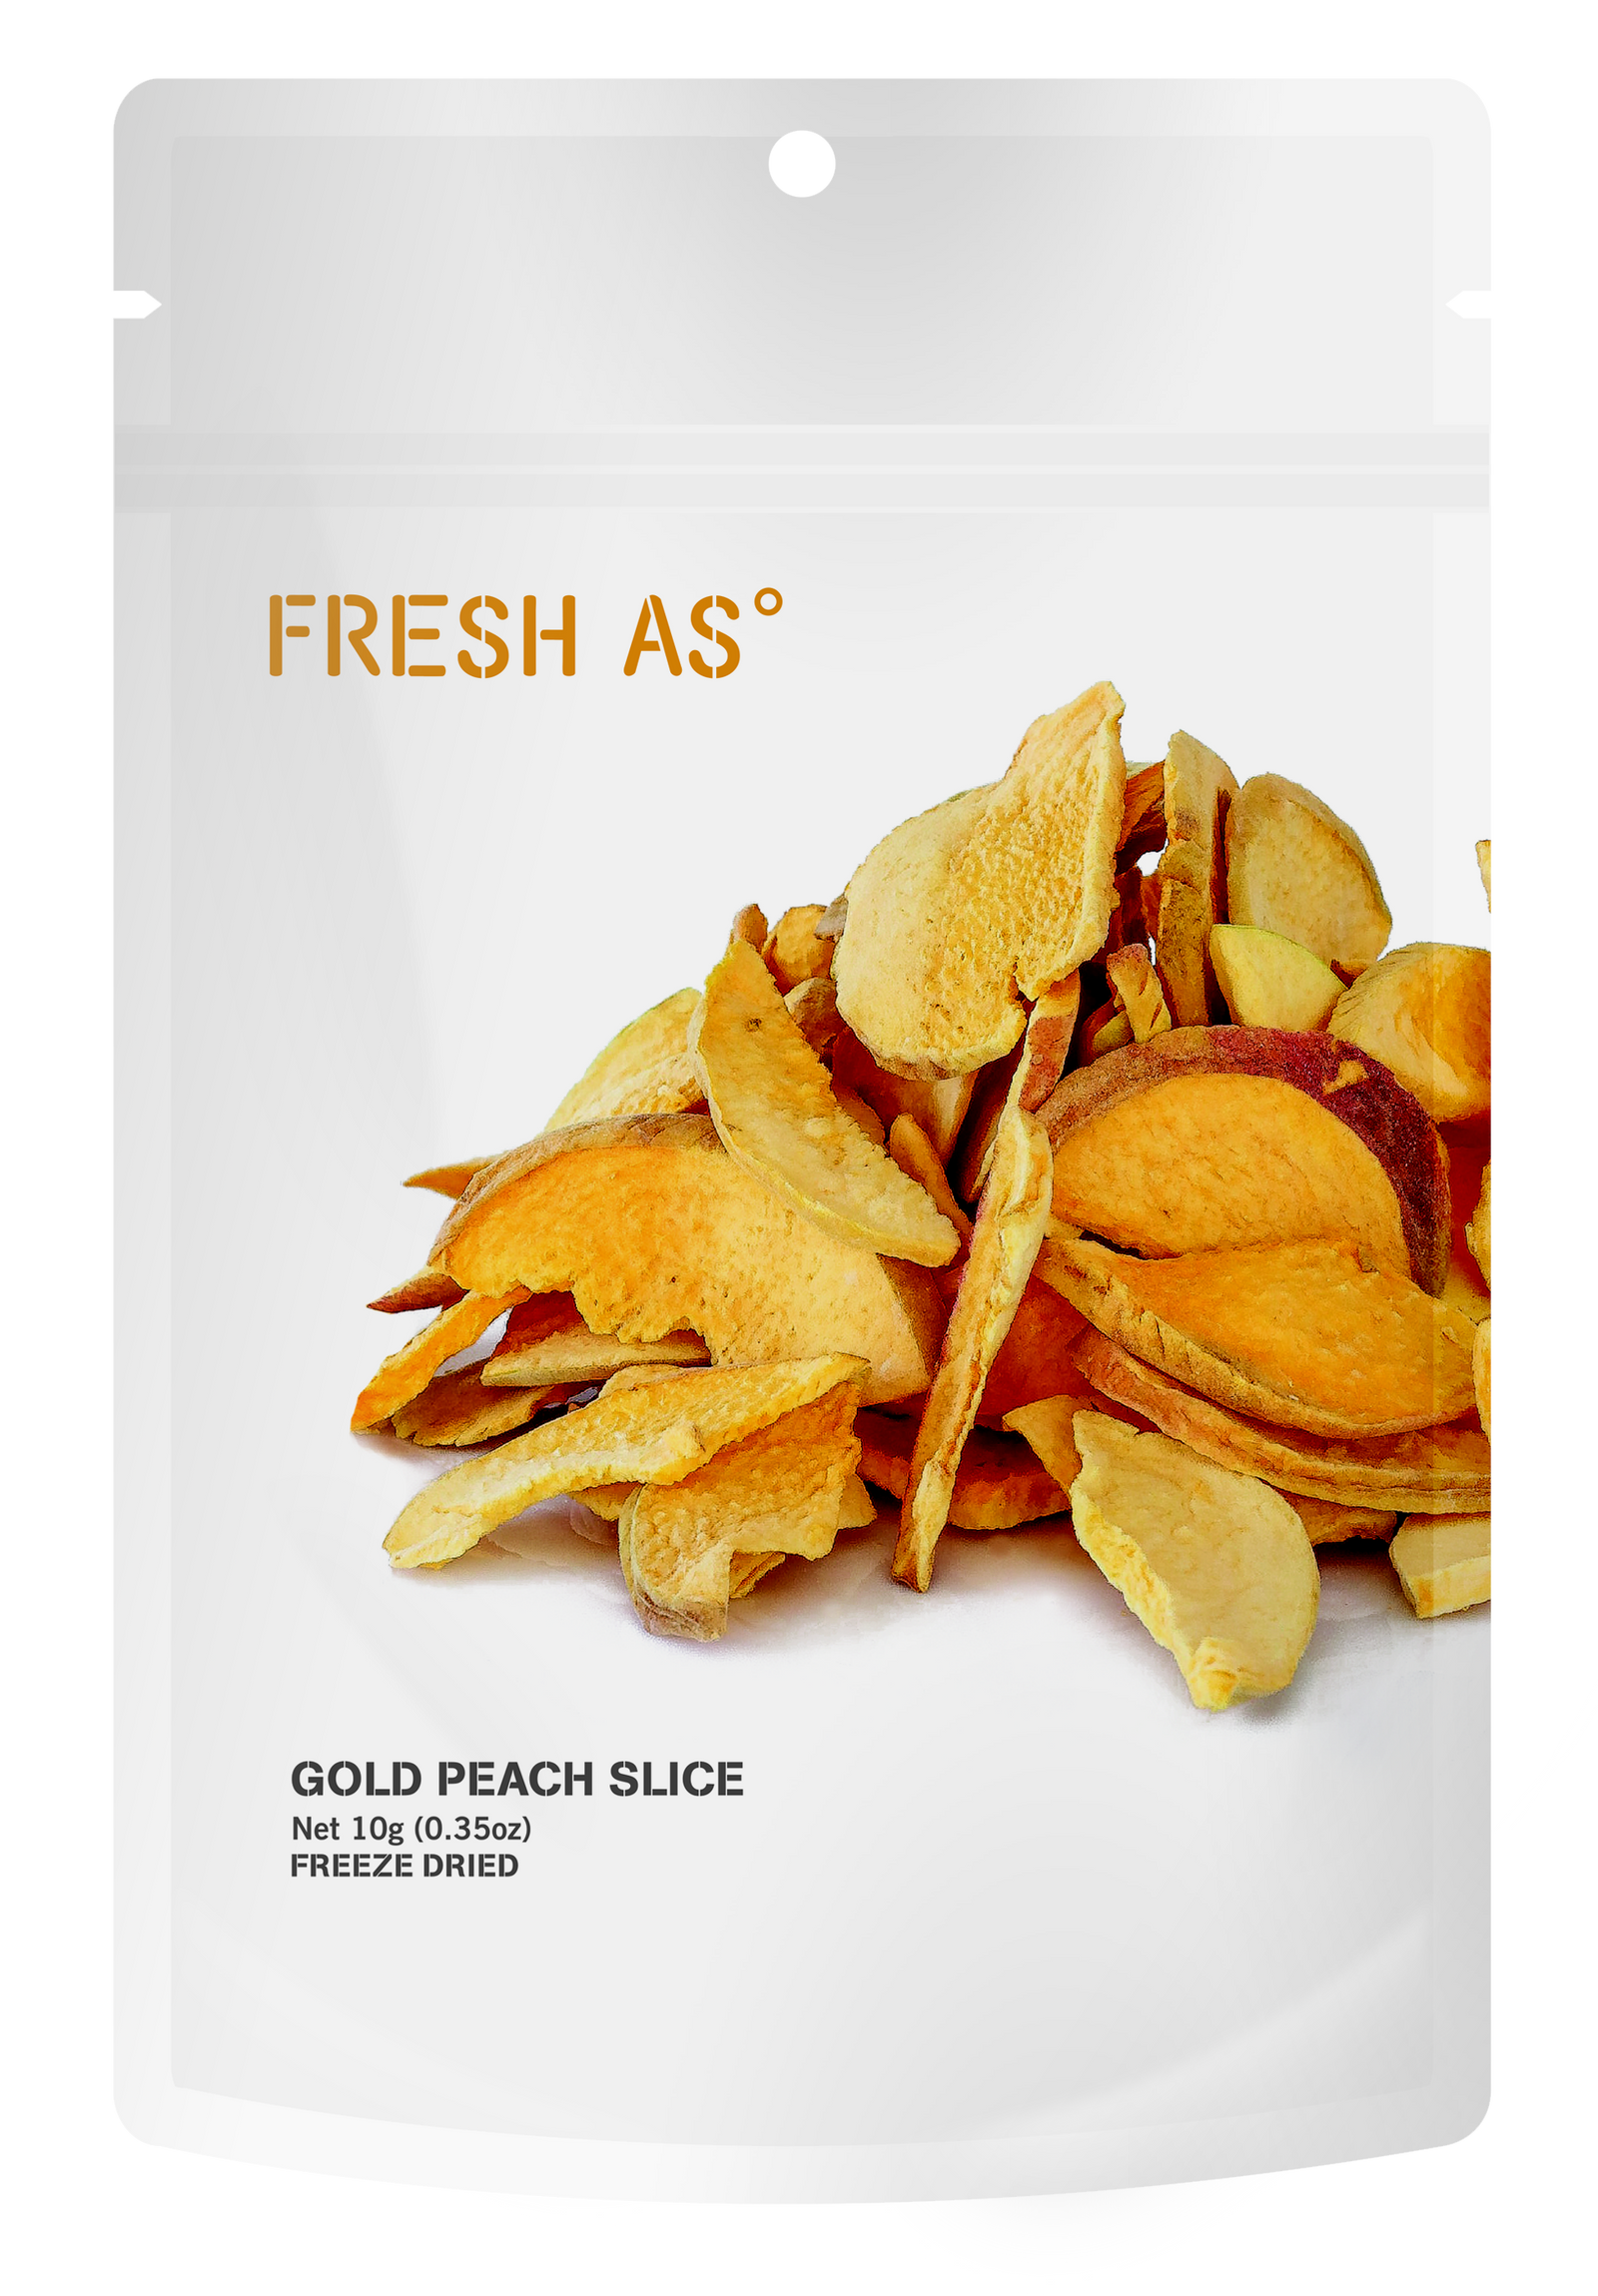 Golden Peach slices 10g